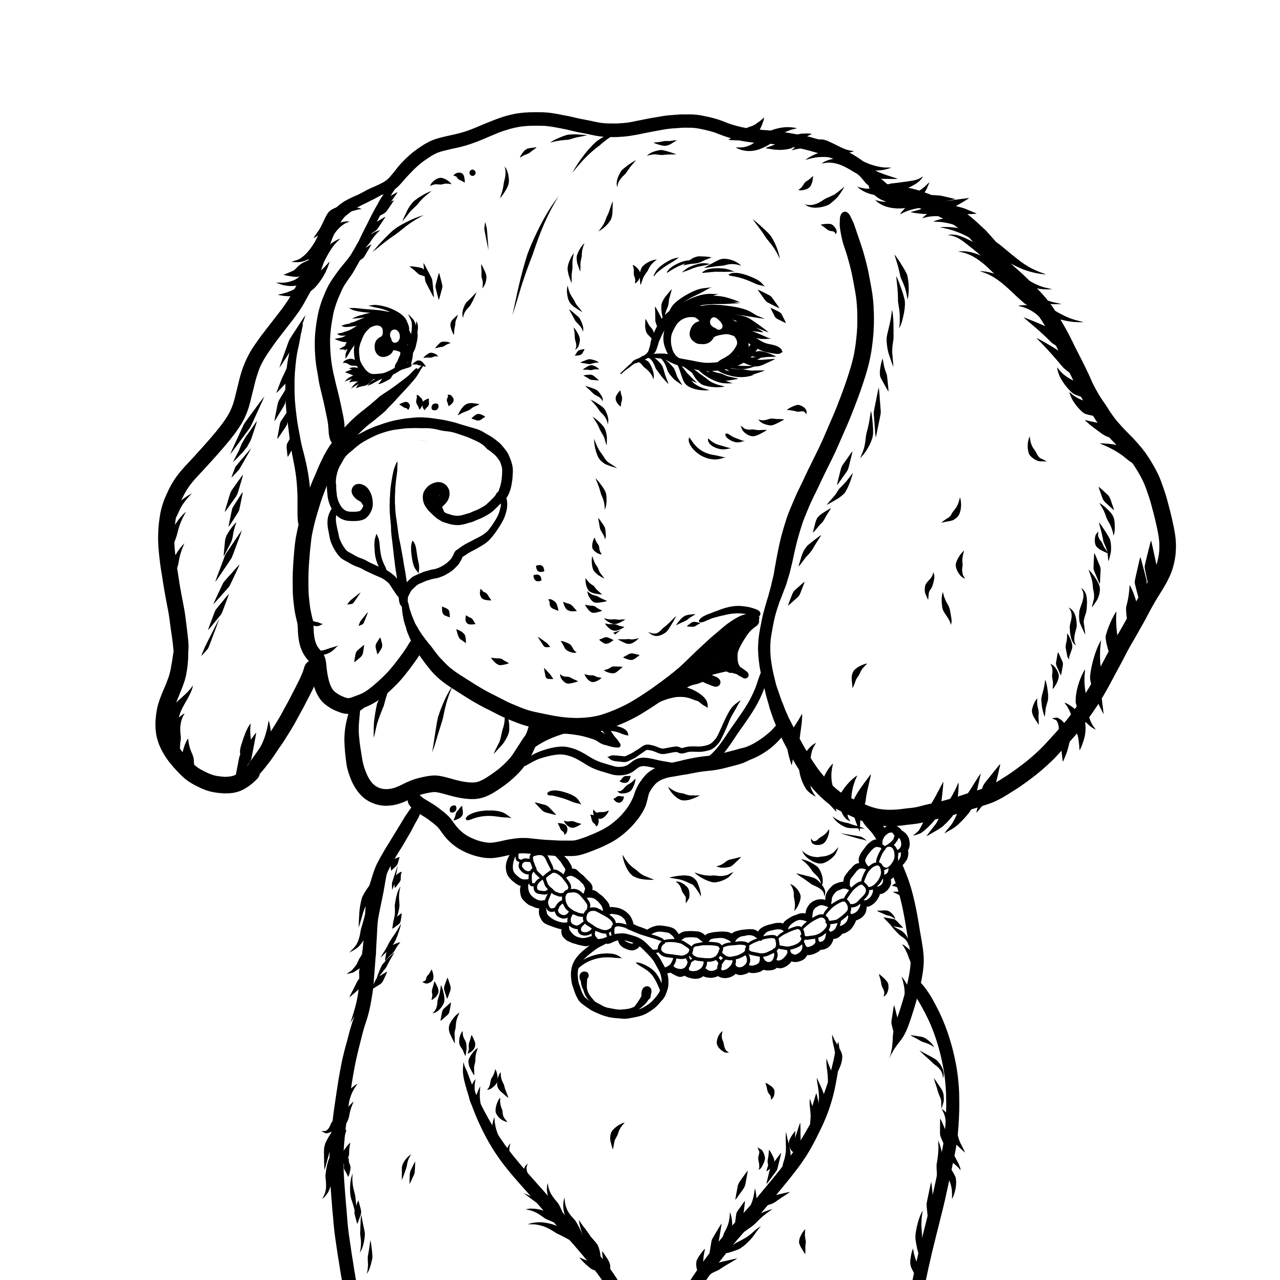 Dog outline cartoon design on transparent... - Stock Illustration  [105756521] - PIXTA